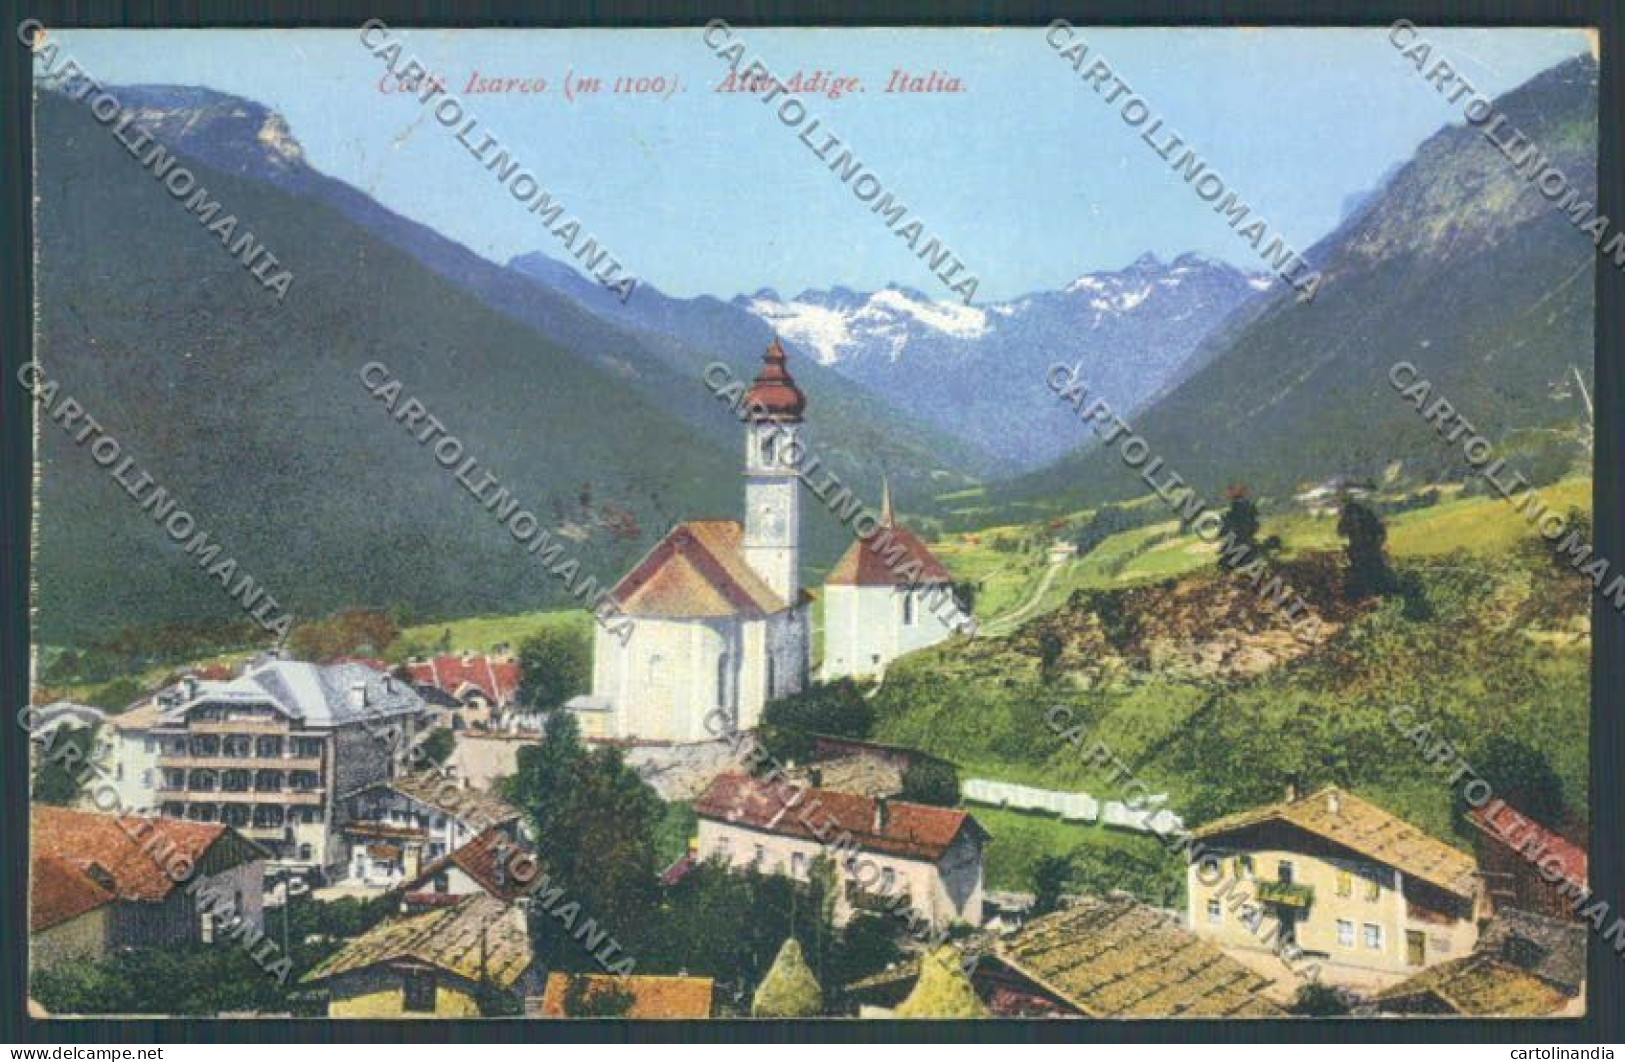 Bolzano Brennero Colle Isarco Cartolina ZB0077 - Bolzano